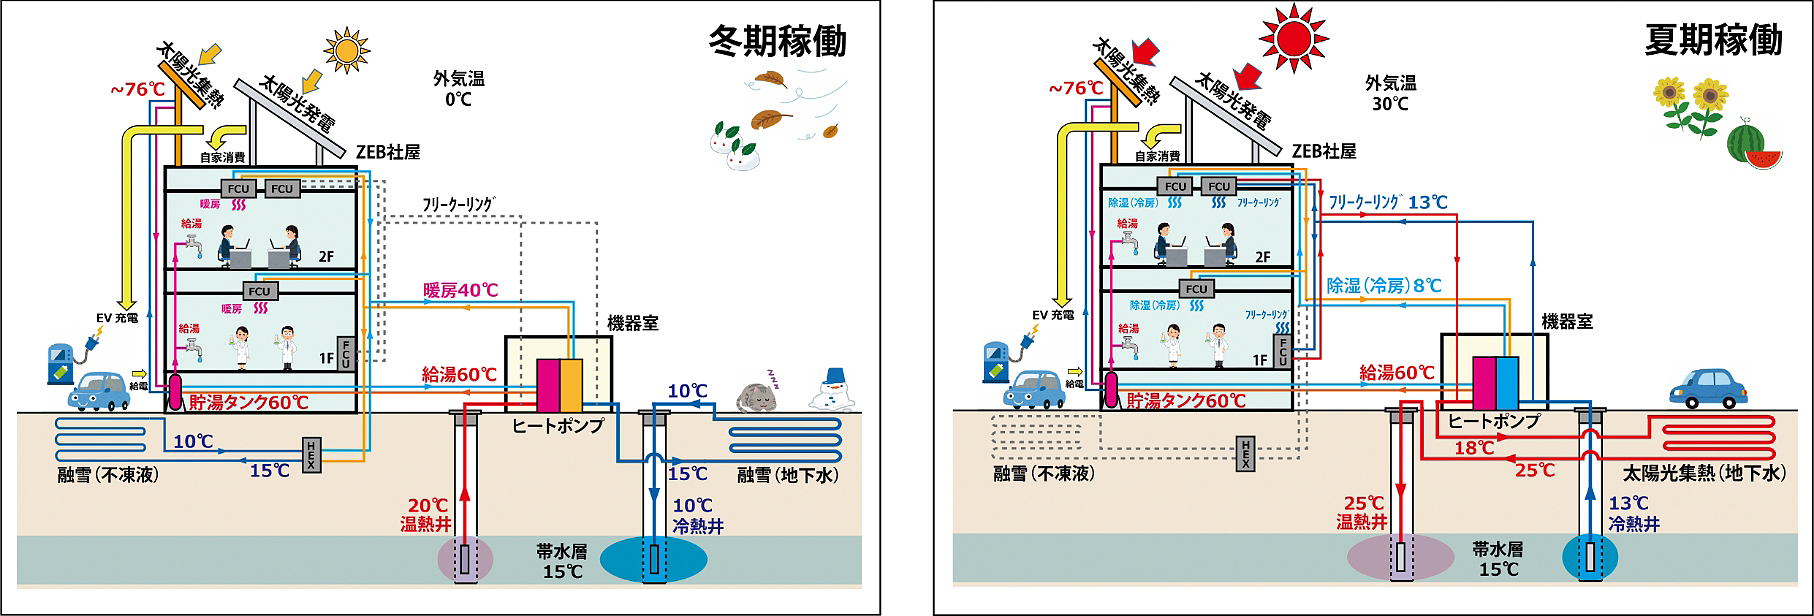 高効率帯水層蓄熱によるトータル熱供給システム（左：冬期稼働、右：夏期稼働）を解説した図表